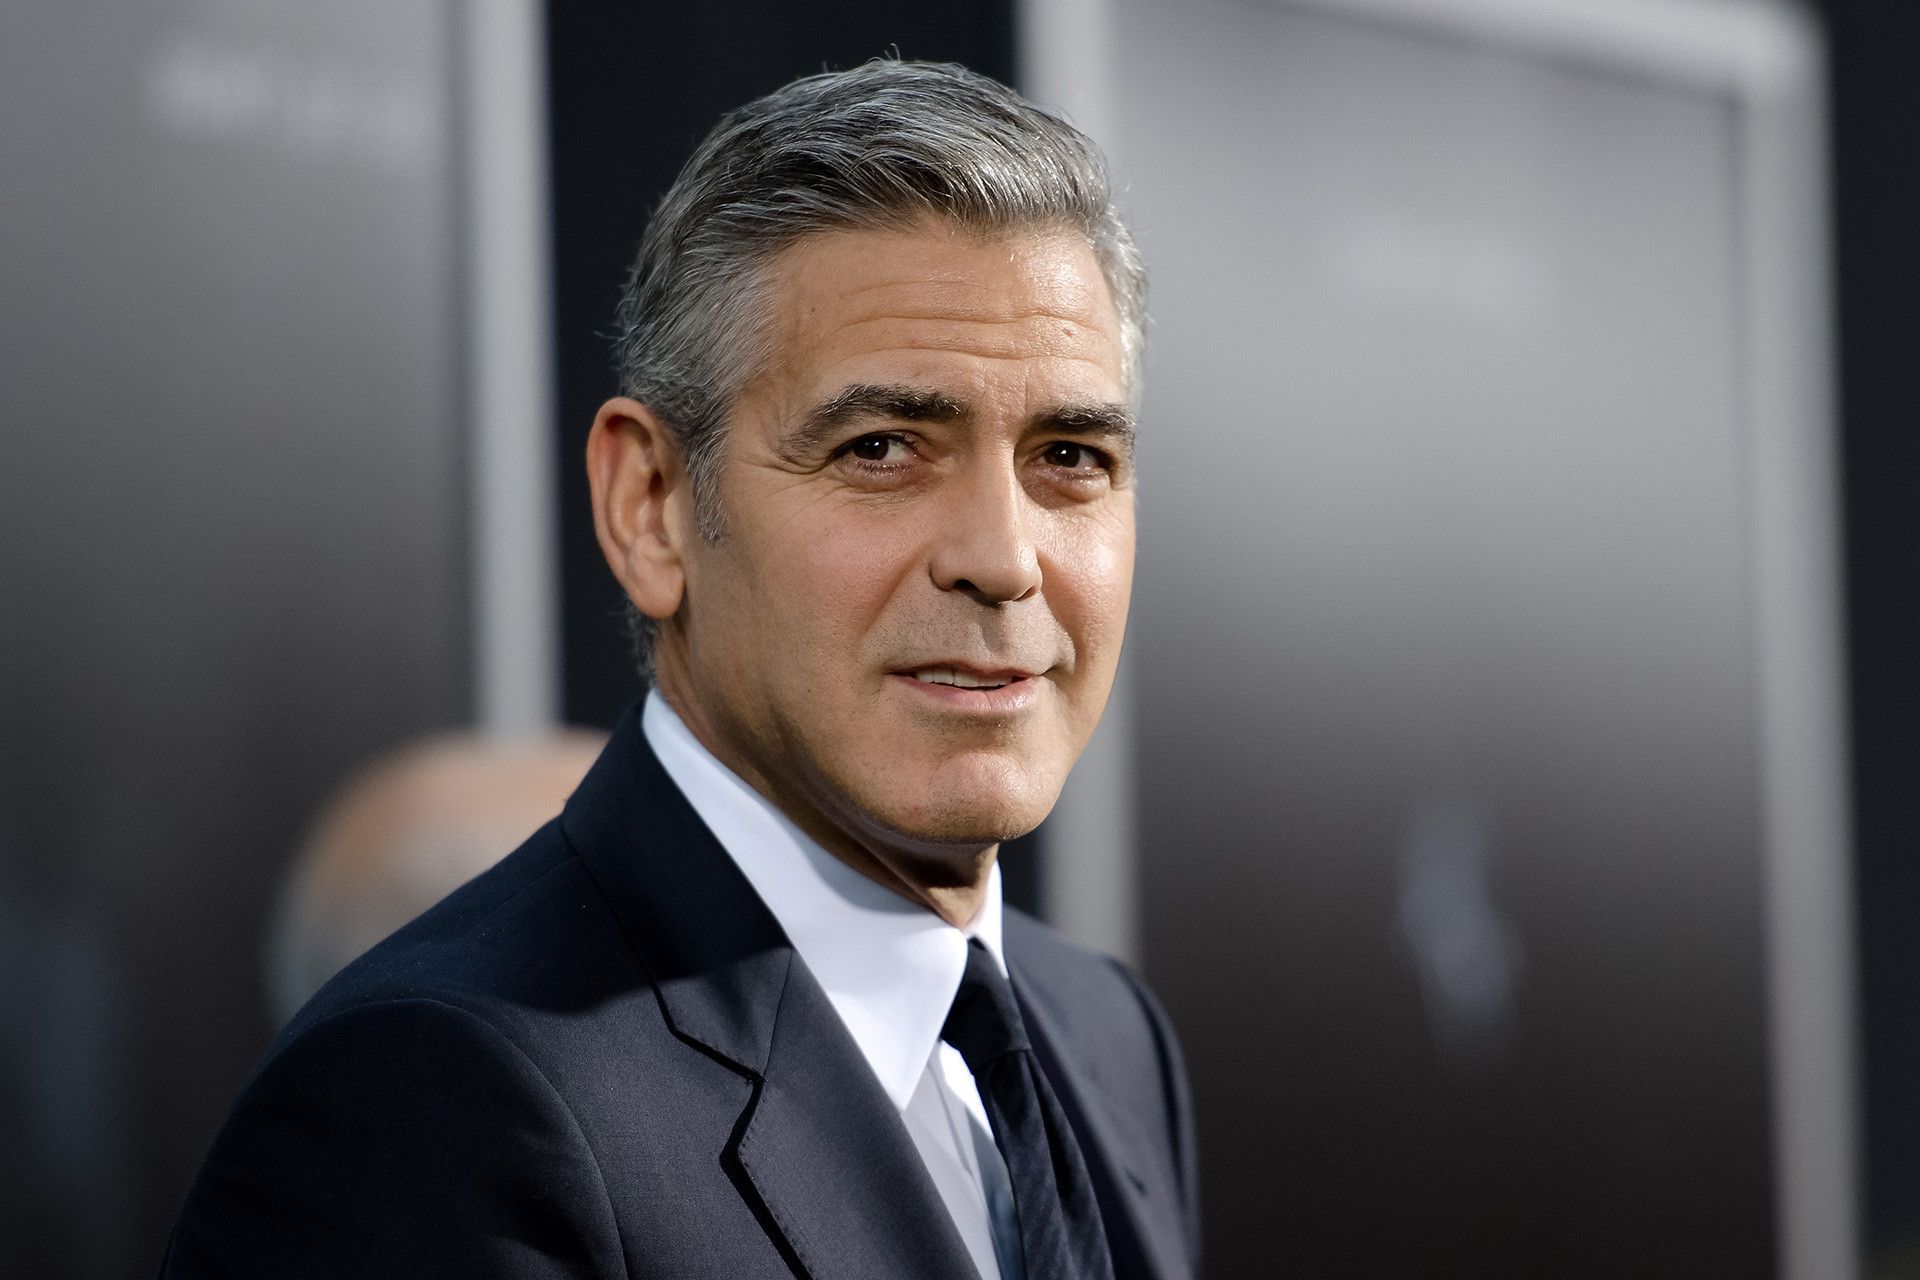 ANCA, Türk Hava Yolları'nın 35 milyon dolarlık reklamında oynamayı reddettiği için Clooney'e teşekkür etti